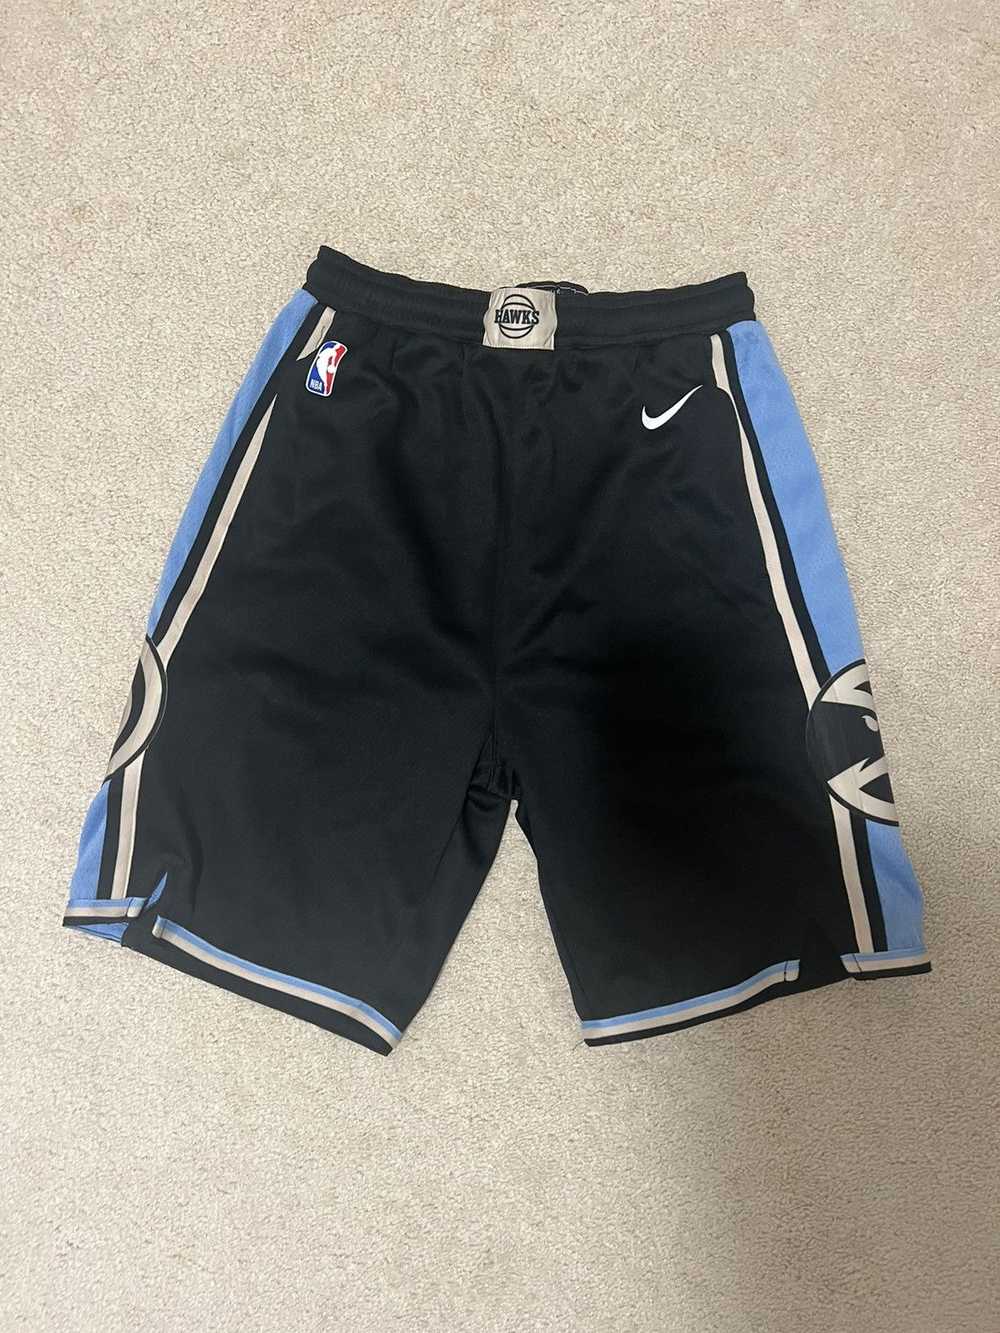 NBA S Nike NBA Atlanta Hawks Basketball Shorts - image 1